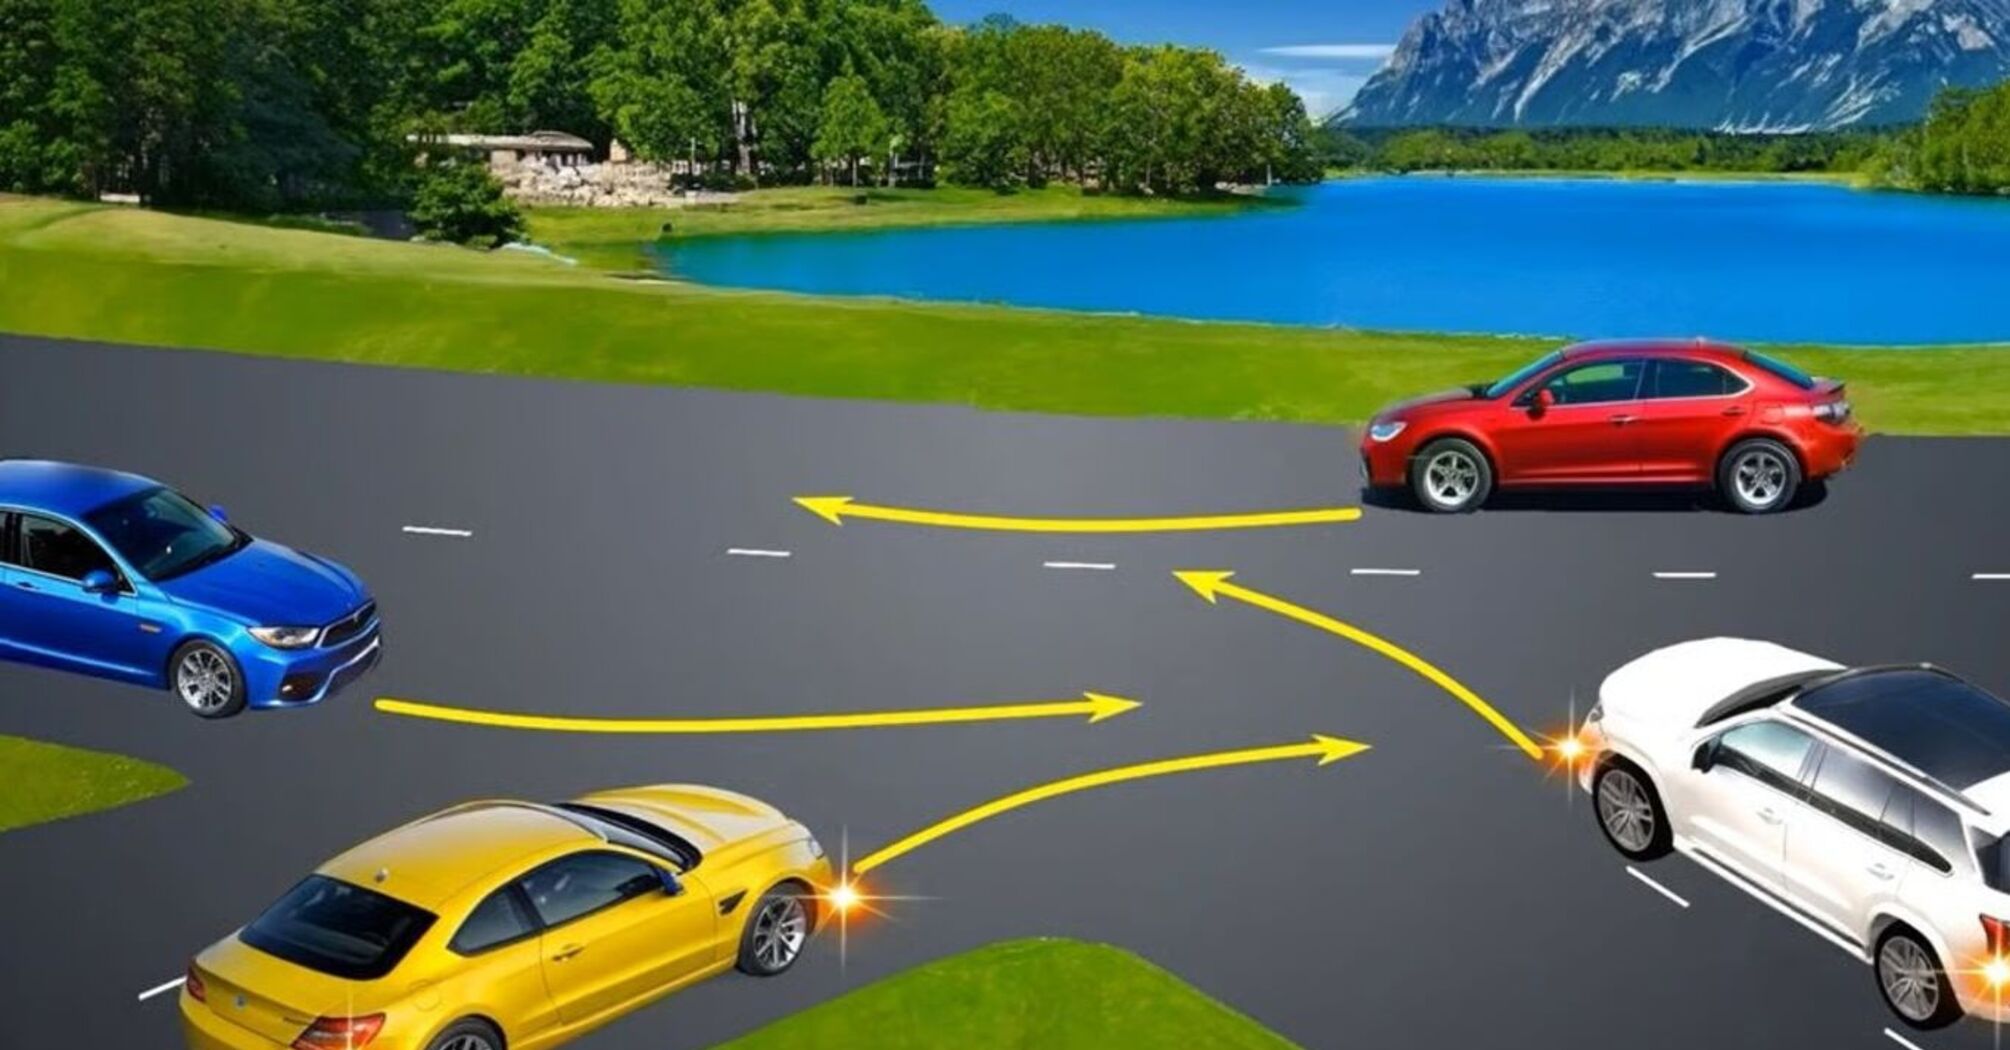 Как разъехаться четырем автомобилям на нетипичном перекрестке: хитрый тест по ПДД